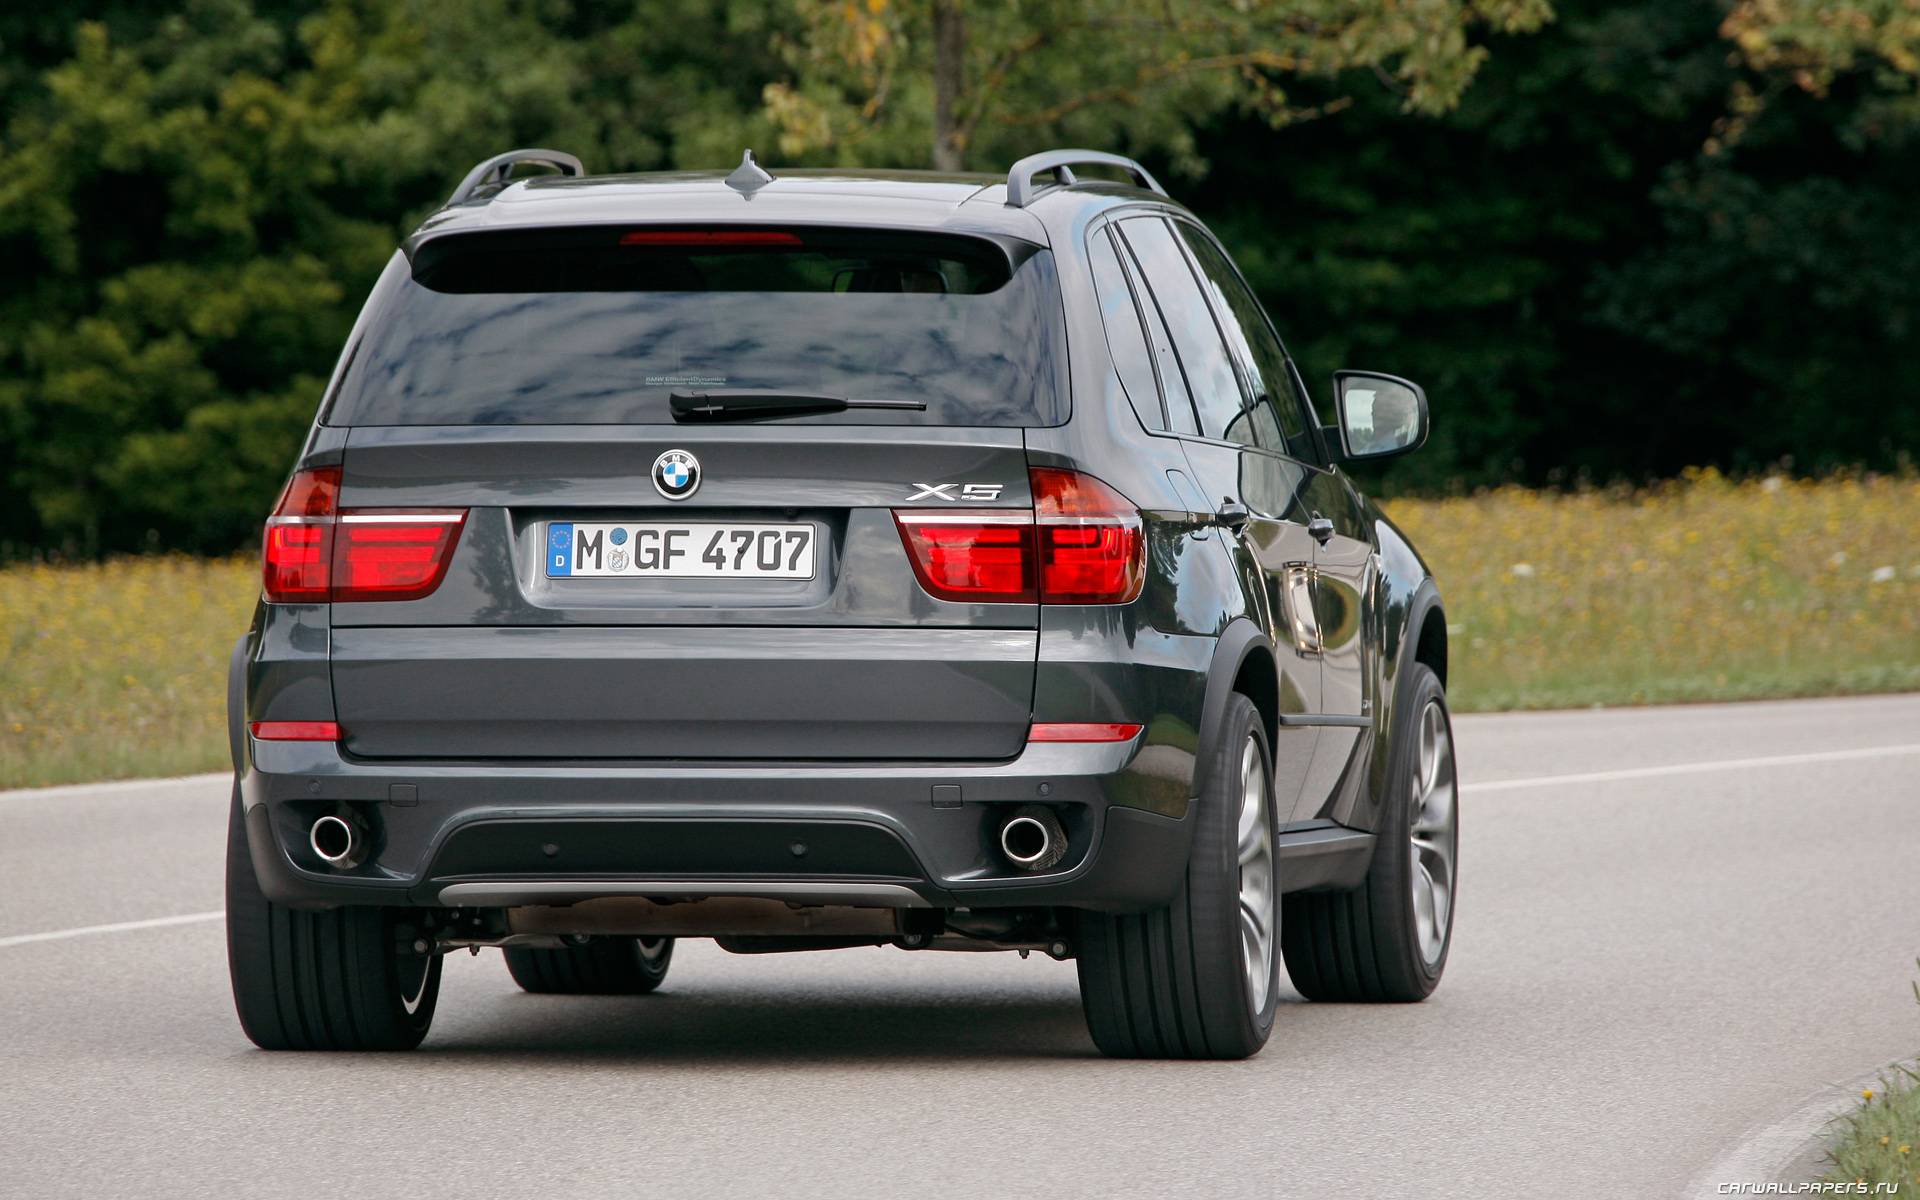 Вот почему тот, кто сел за руль BMW, больше не сядет в другую марку: обзор BMW X5 (Е70)